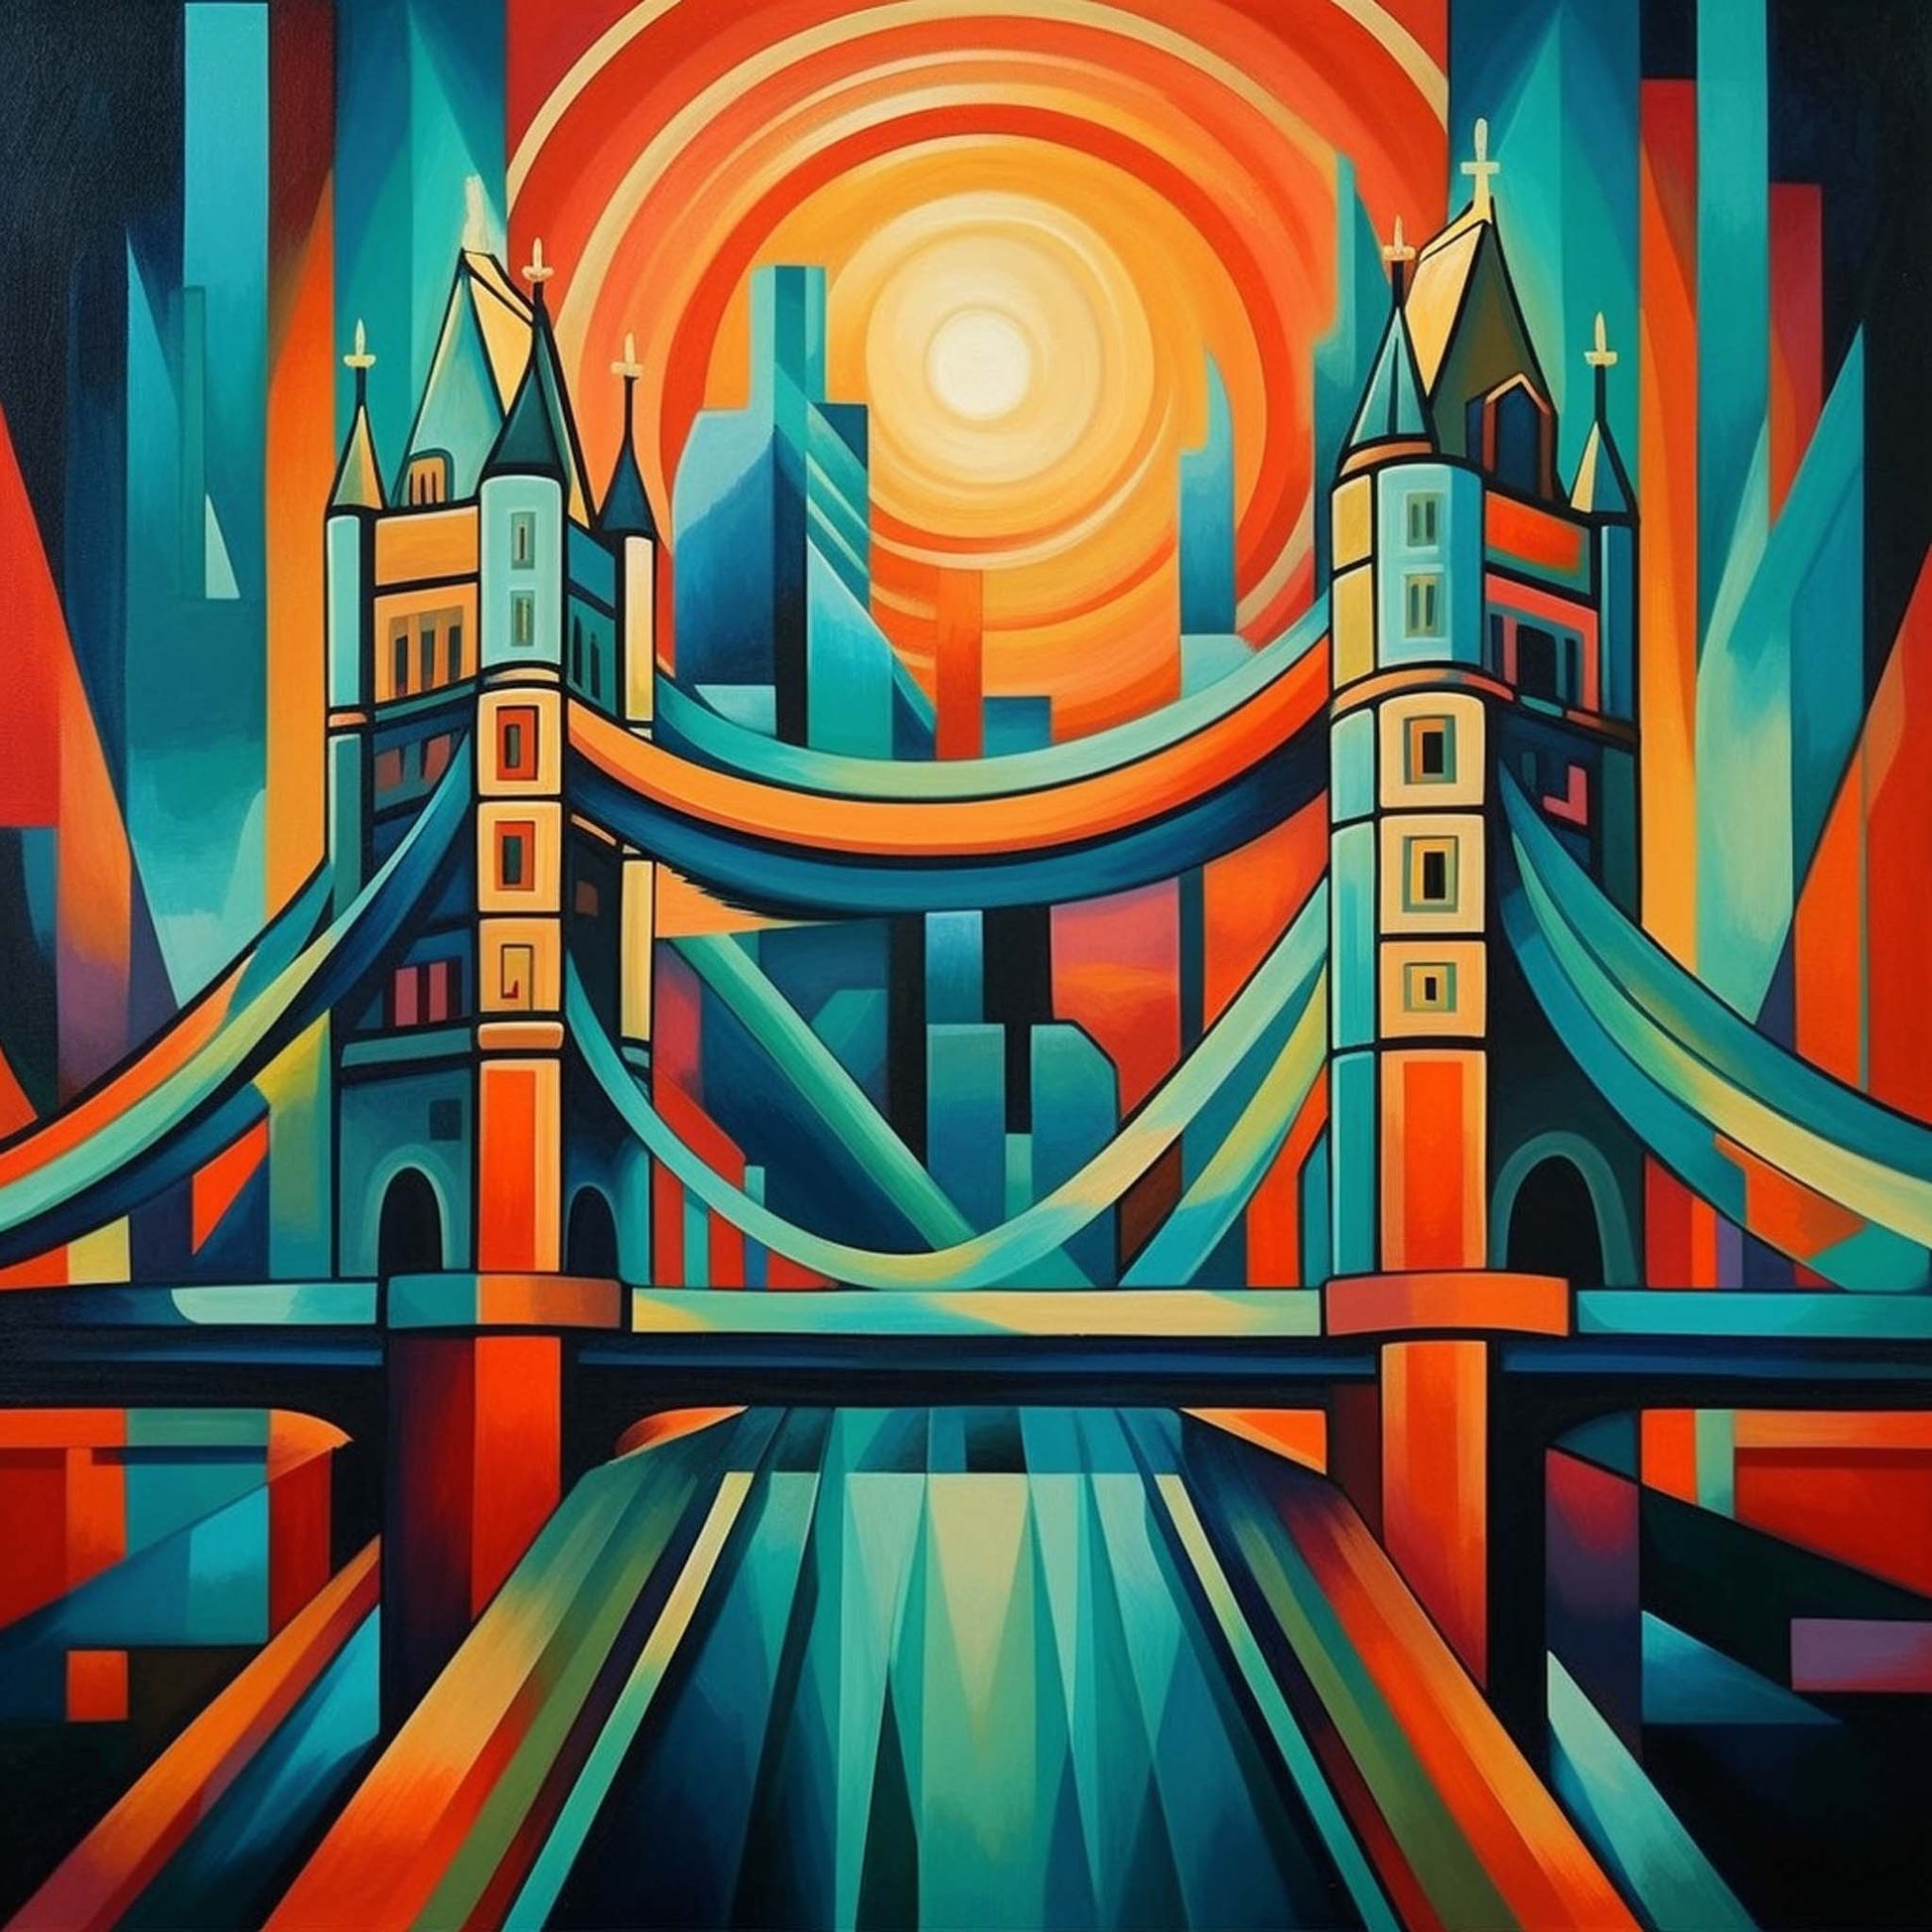 Urbanisto - London Tower Bridge - Wandbild in der Stilrichtung des Futurismus